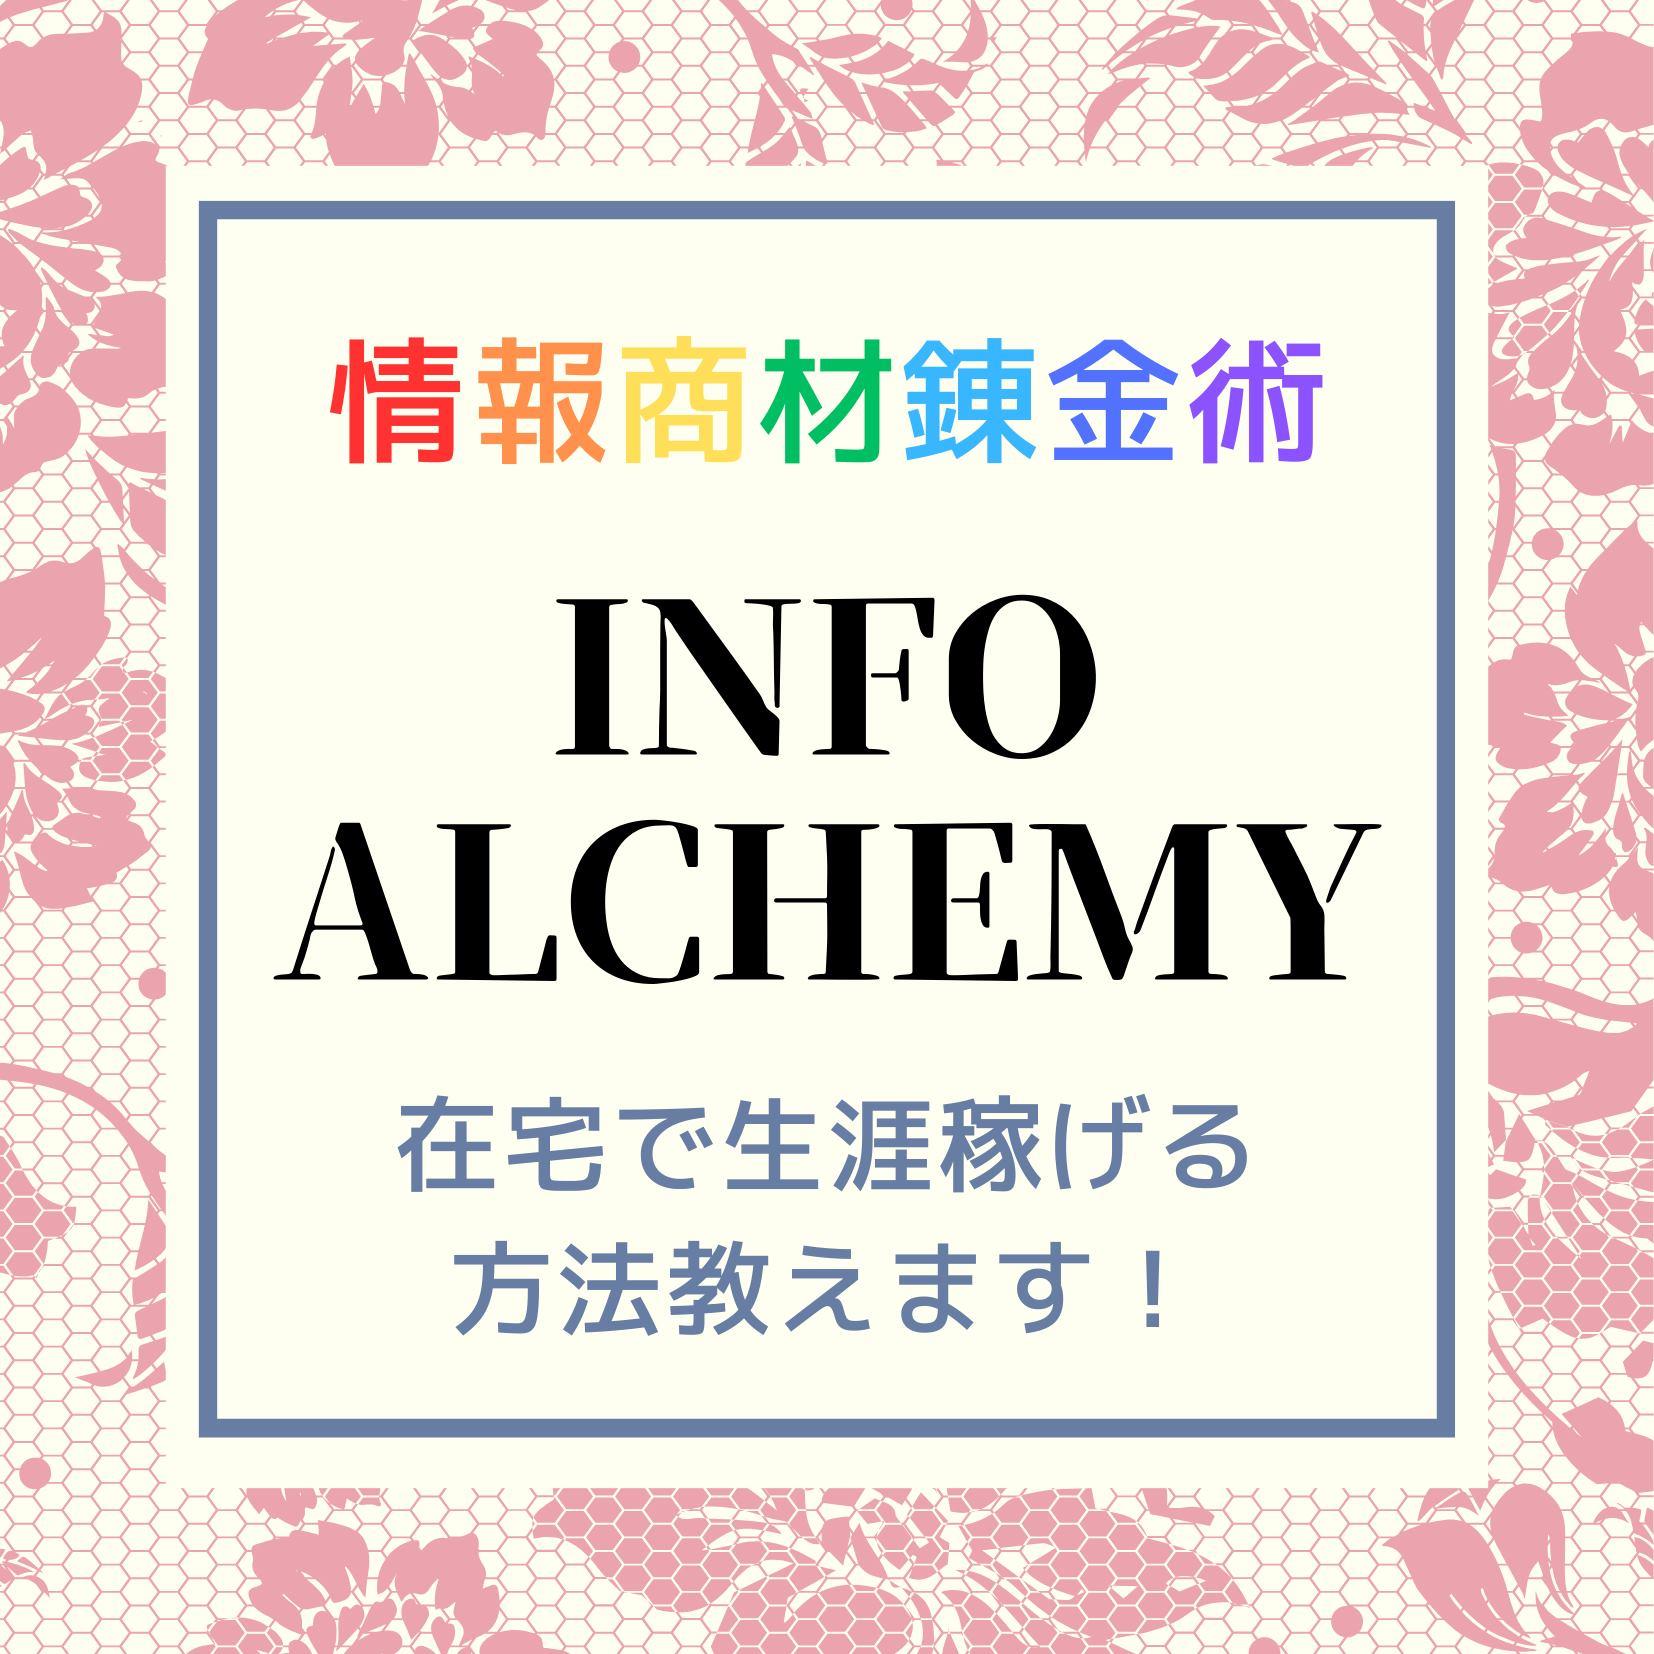 INFO ALCHEMY 情報商品錬金術